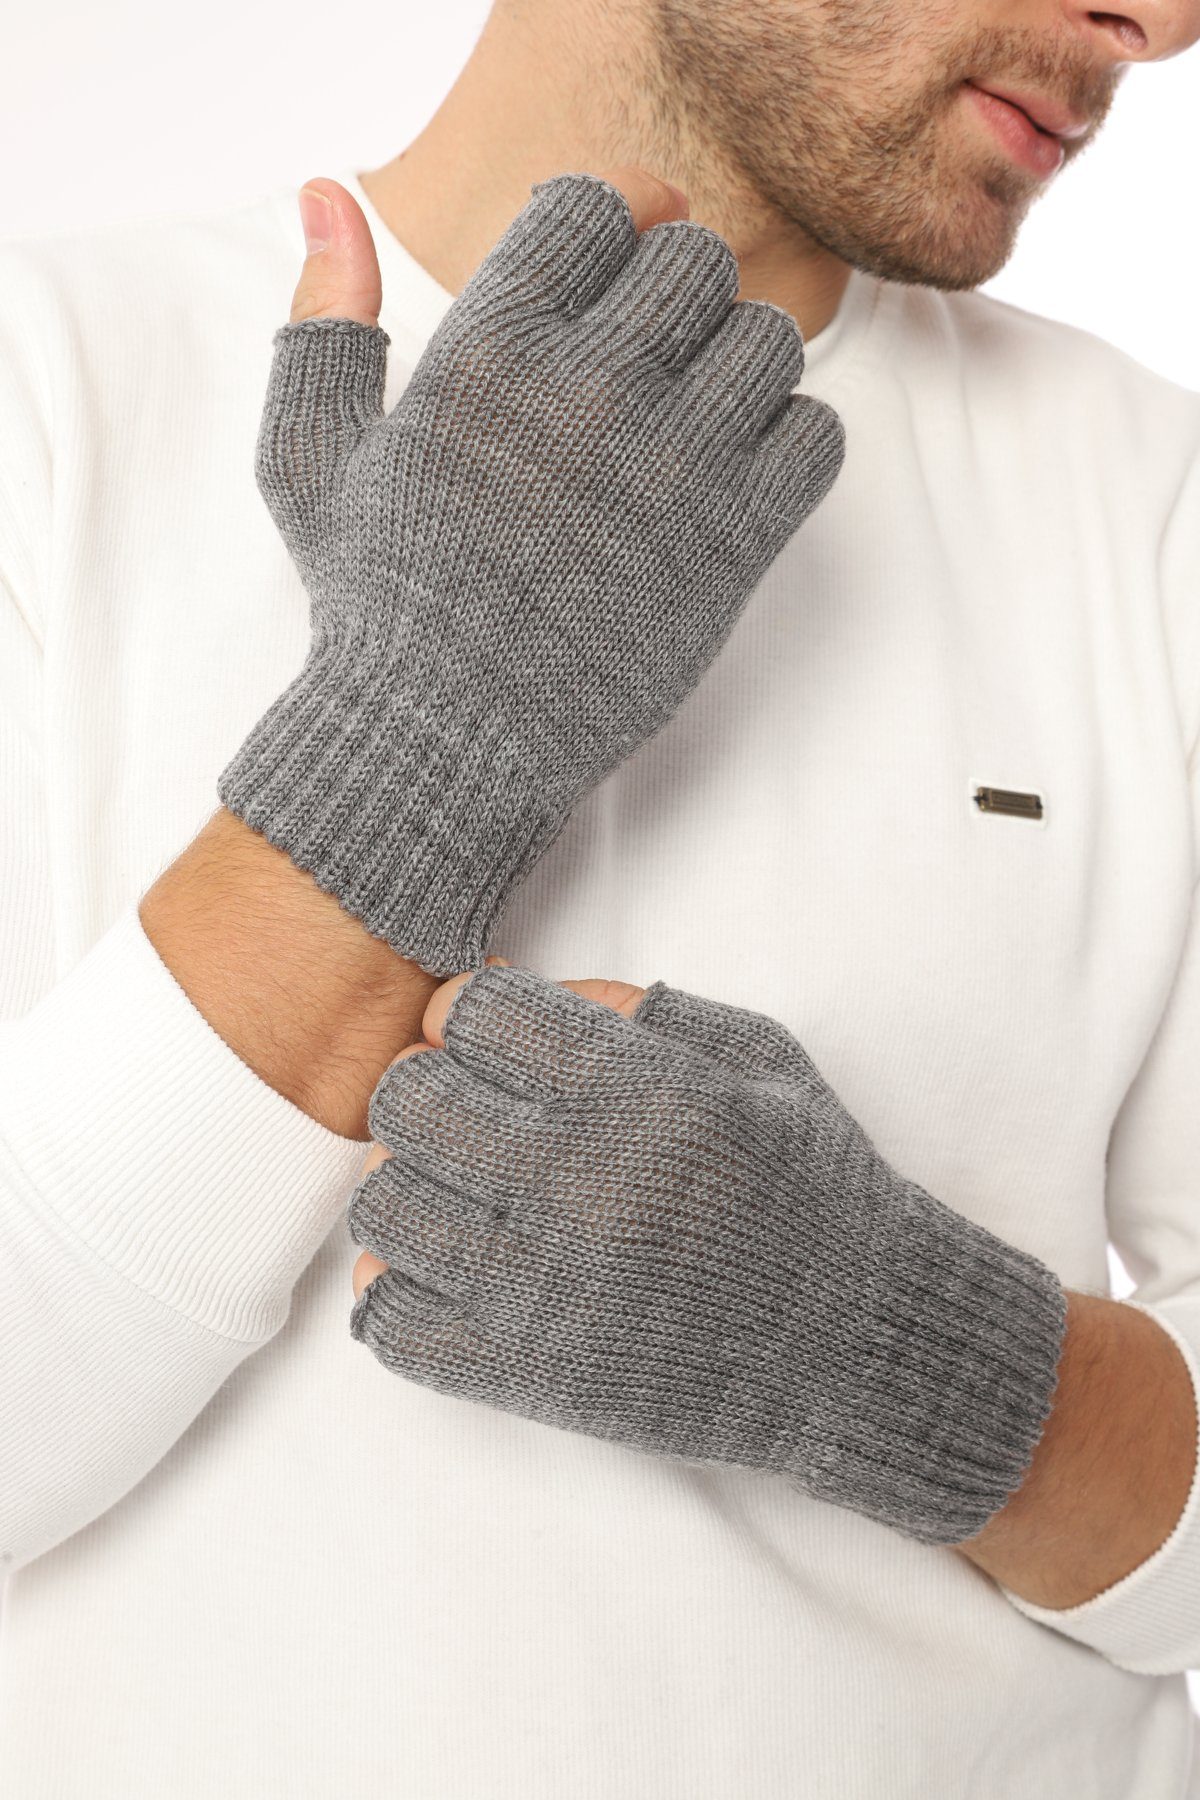 herémood Strickhandschuhe Handschuhe Winterhandschuhe Rippstrick Strickhandschuhe Herren Dunkelgrau